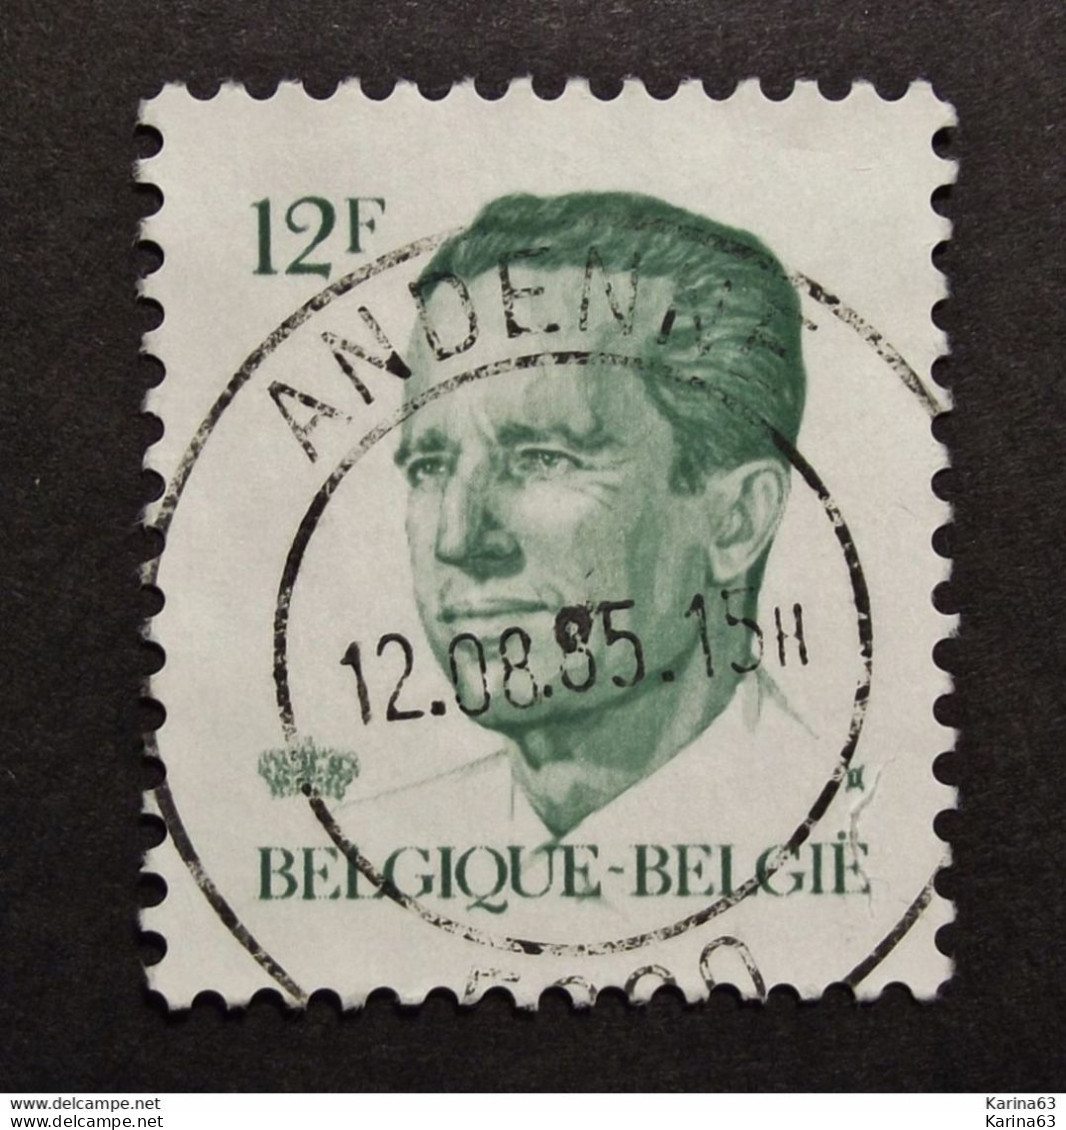 Belgie Belgique - 1984  OPB/COB N° 2113 ( 1 Value ) Koning Boudewijn ' Type Velghe'  Obl.  Andenne - Used Stamps